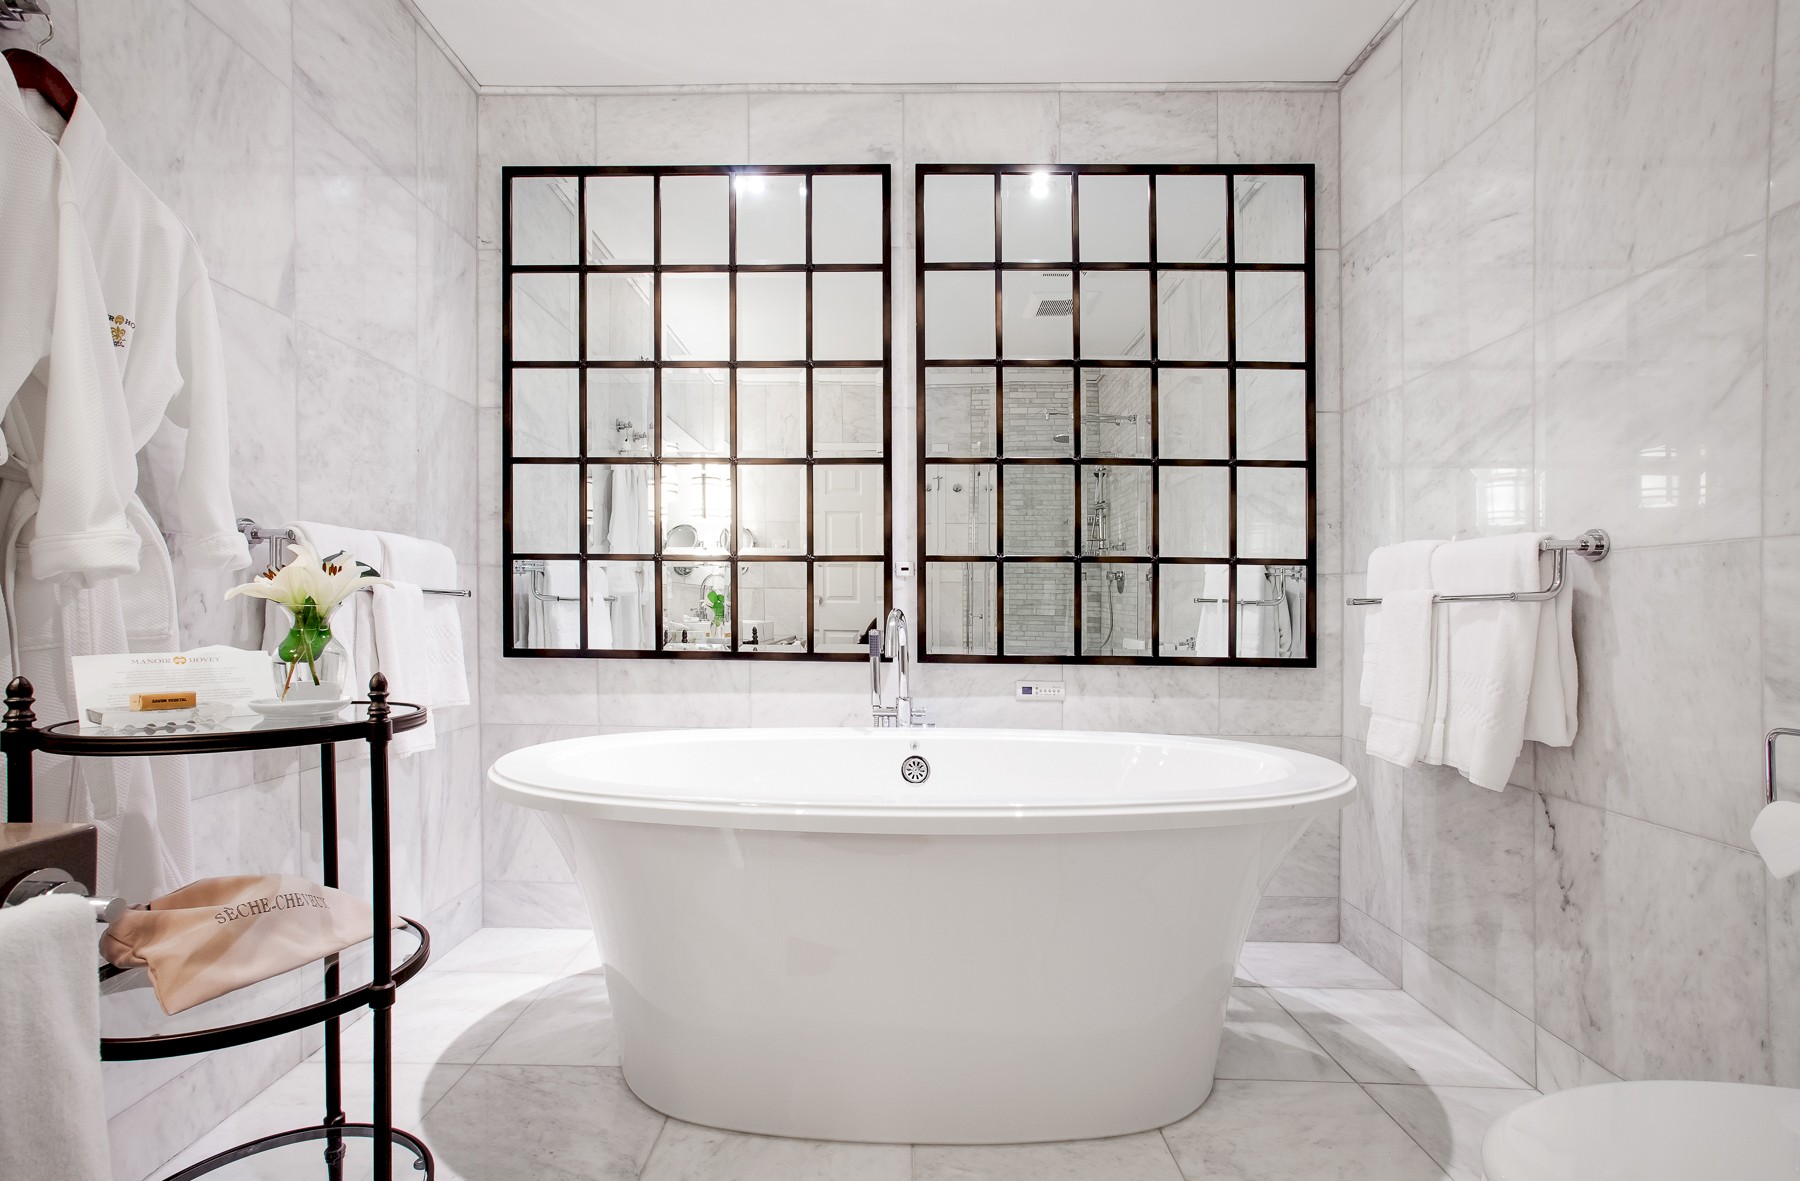 Baignoire au centre d'une salle de bain en marbre